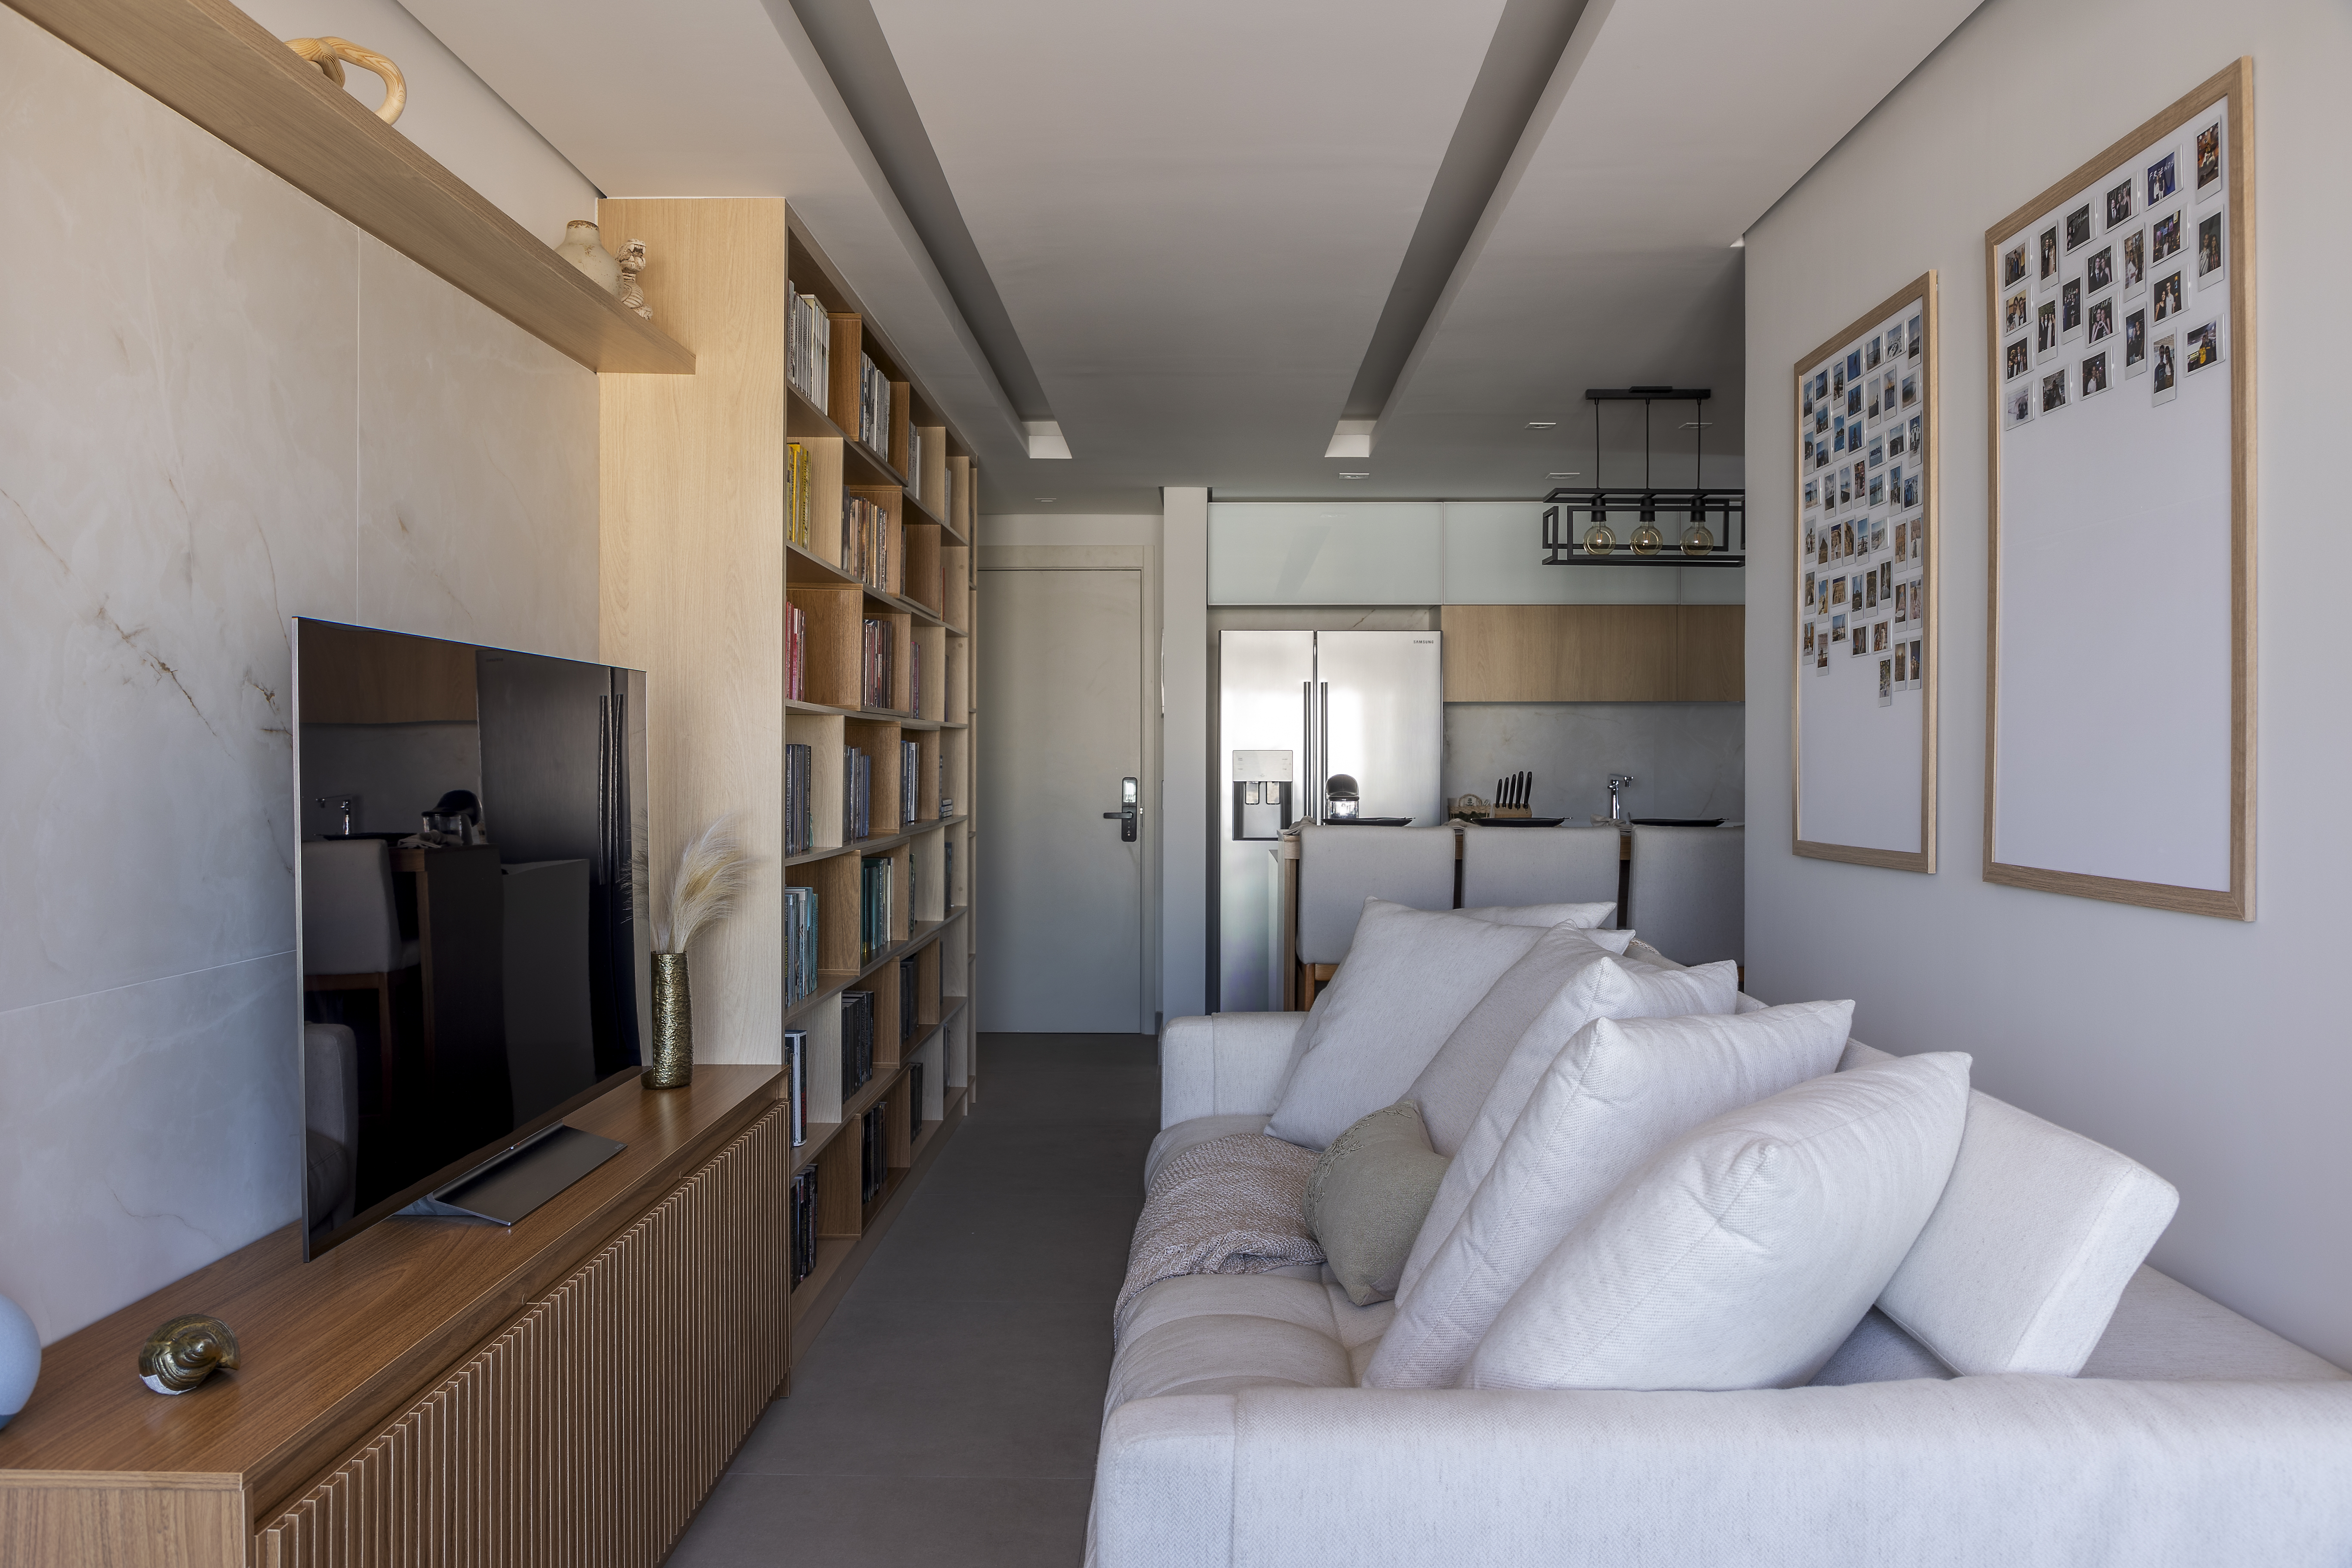 Funkos e livros ganham destaque em reforma de apê de 64 m². Projeto de Vitoria Lacerda. Na foto, sala de estar, sofá branco.